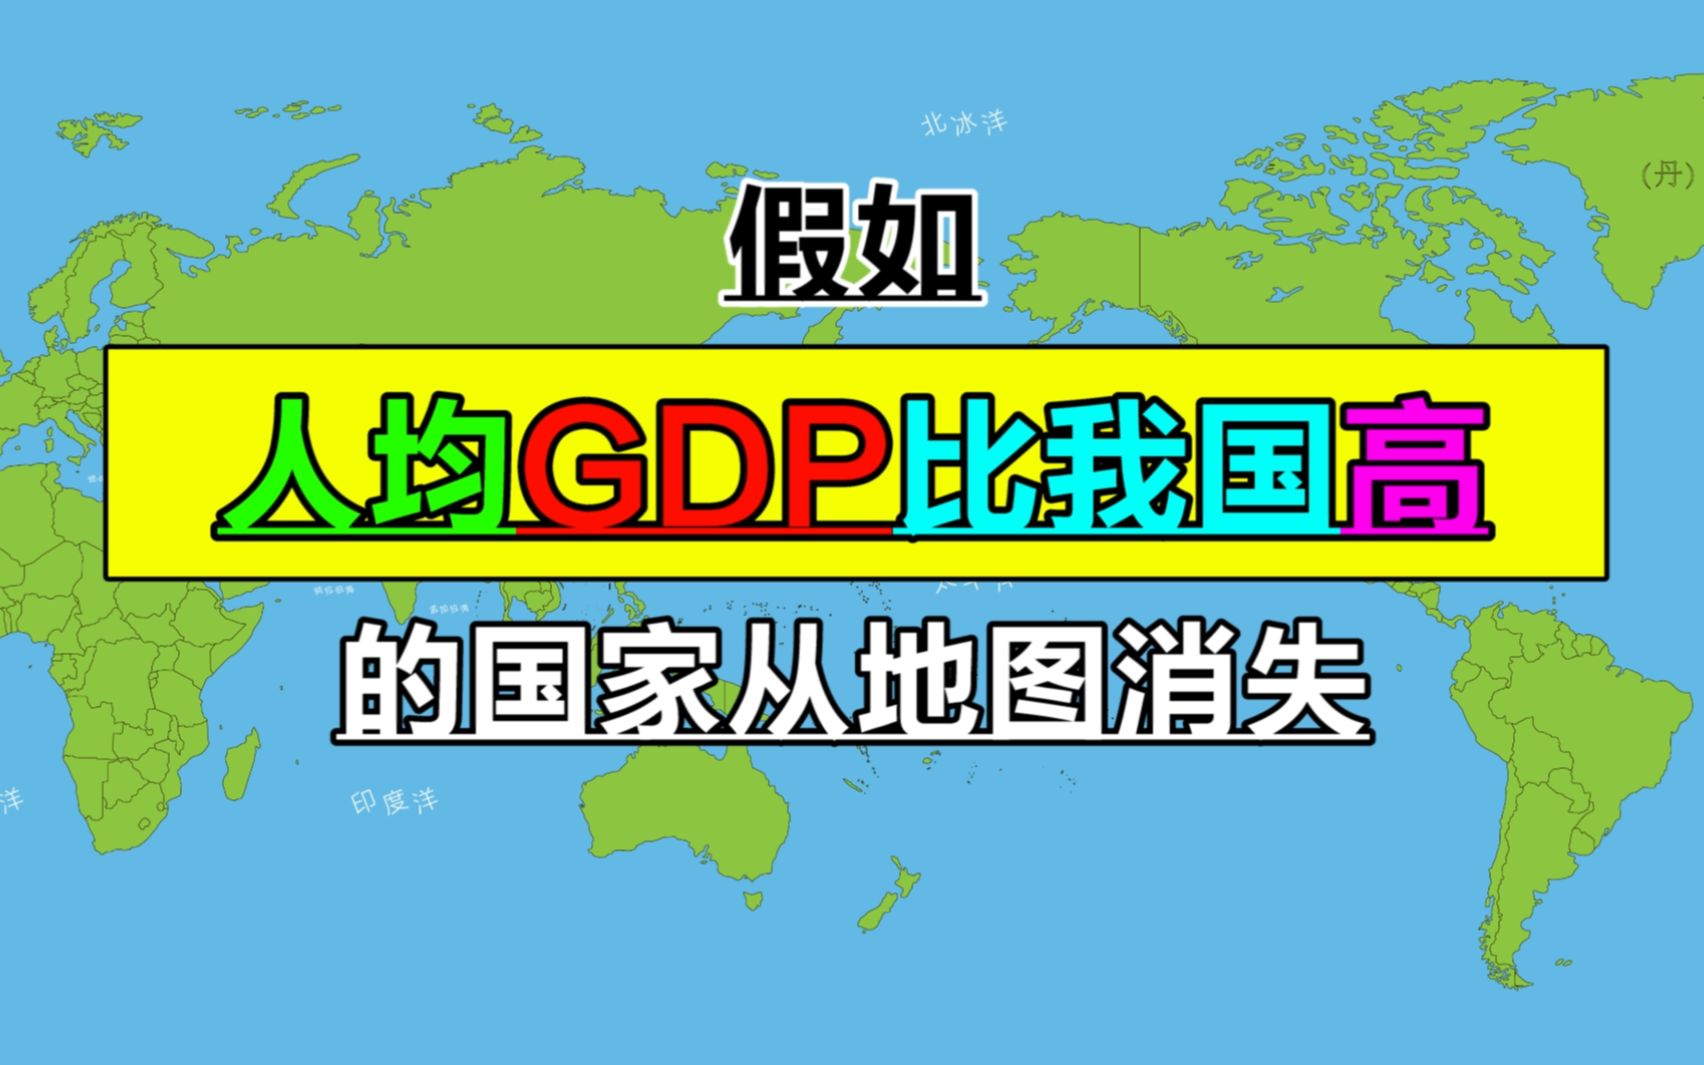 人均GDP比中国高的国家